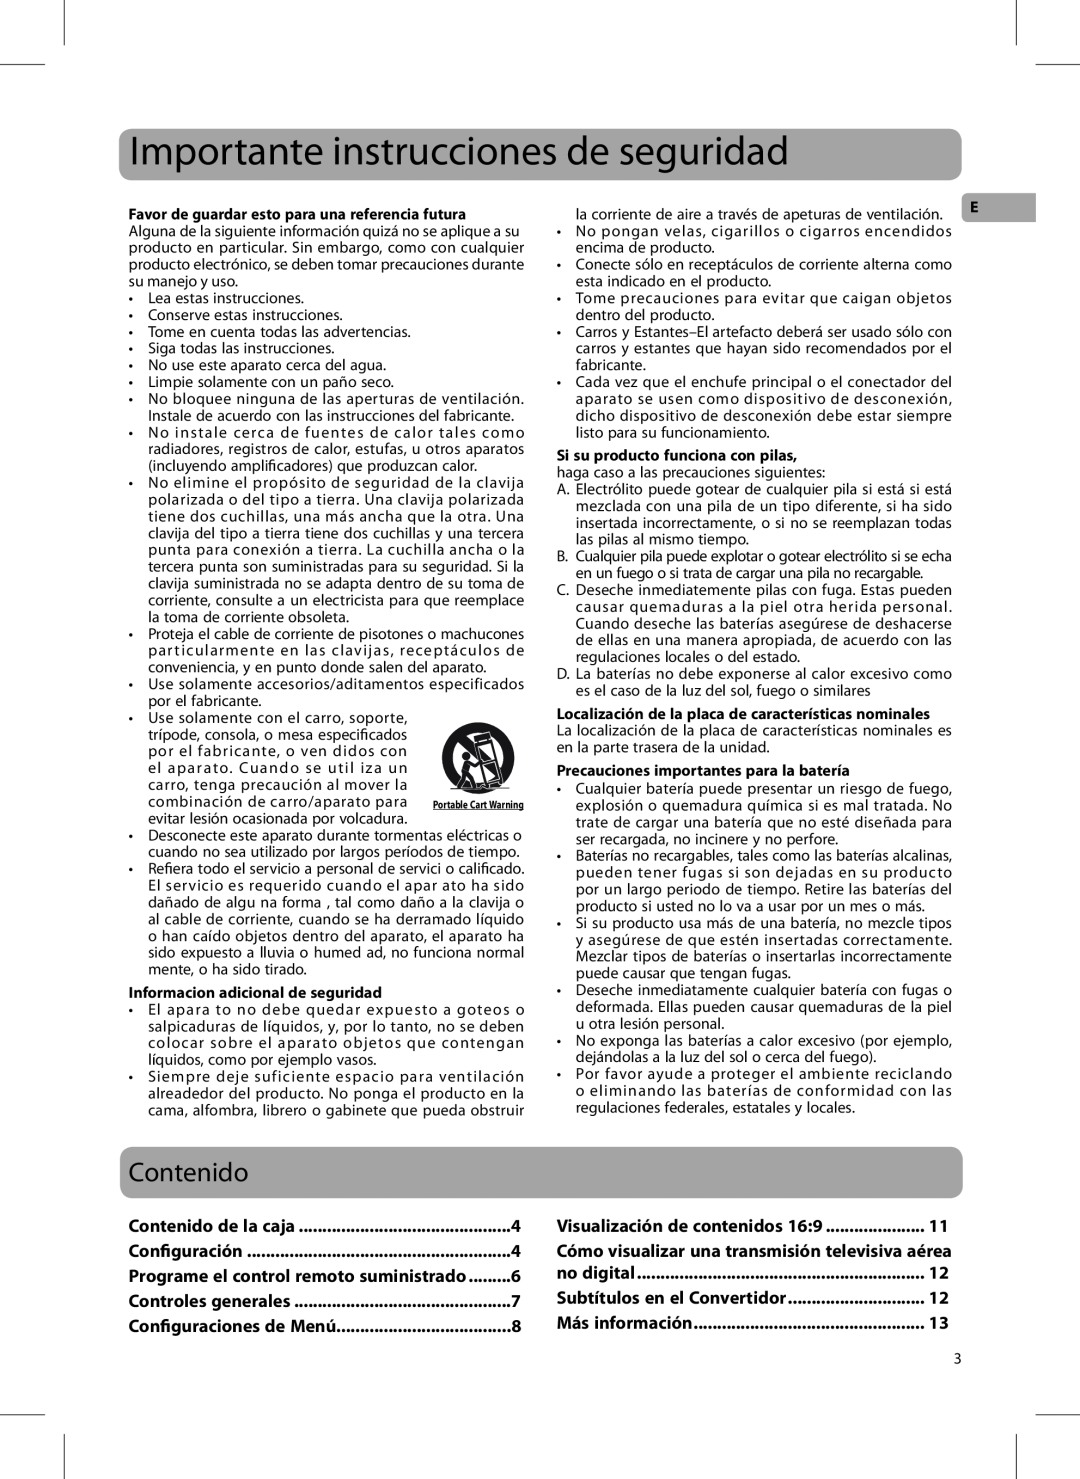 RCA DTA800B1L, 811-DTA891W030 user manual Importante instrucciones de seguridad, Contenido 